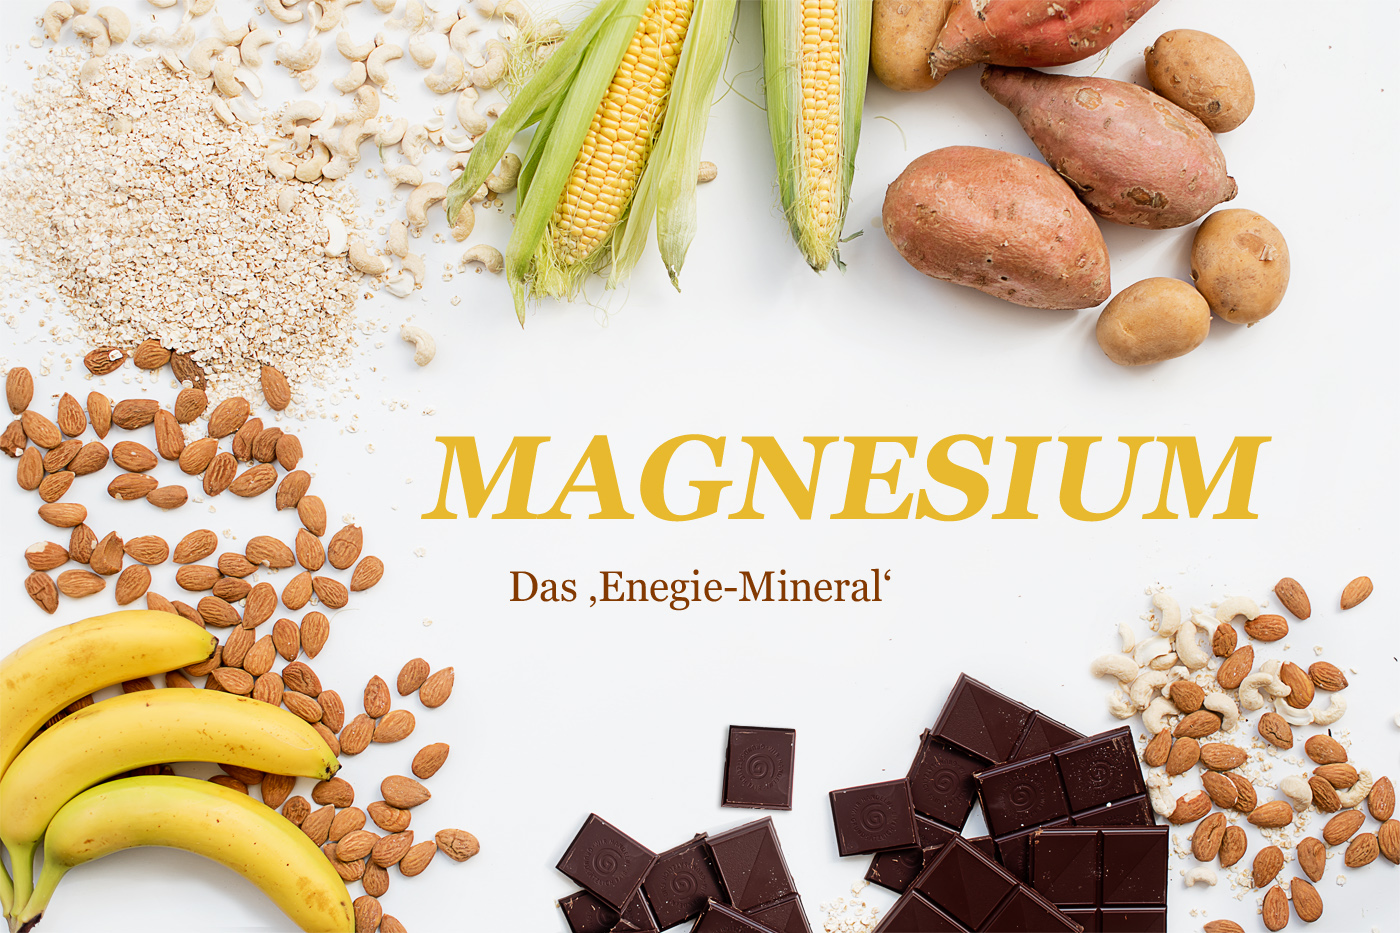 magnesium-mineralstoff-mikronährstoffe-präventiv-medizin-ortomolekulare-medizin-blog